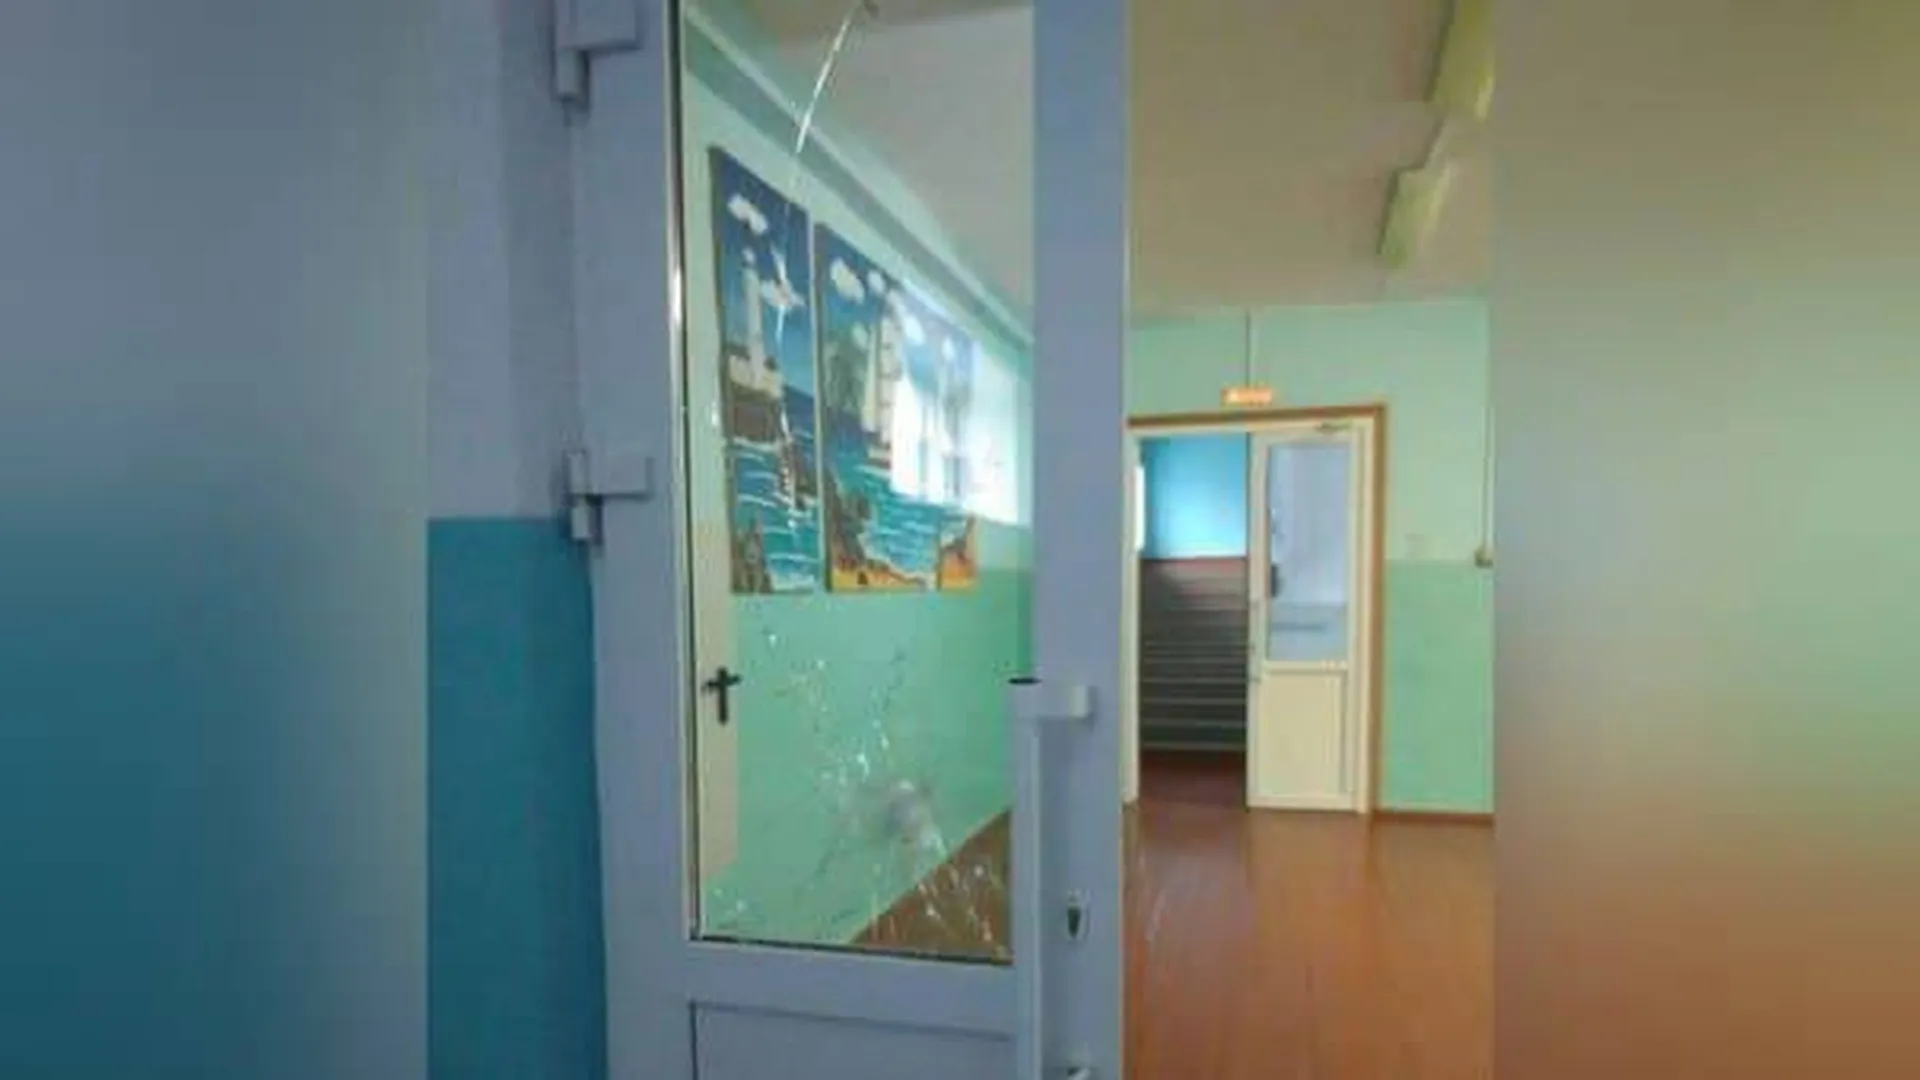 СМИ: учеников заперли в классах во время стрельбы в школе под Пермью